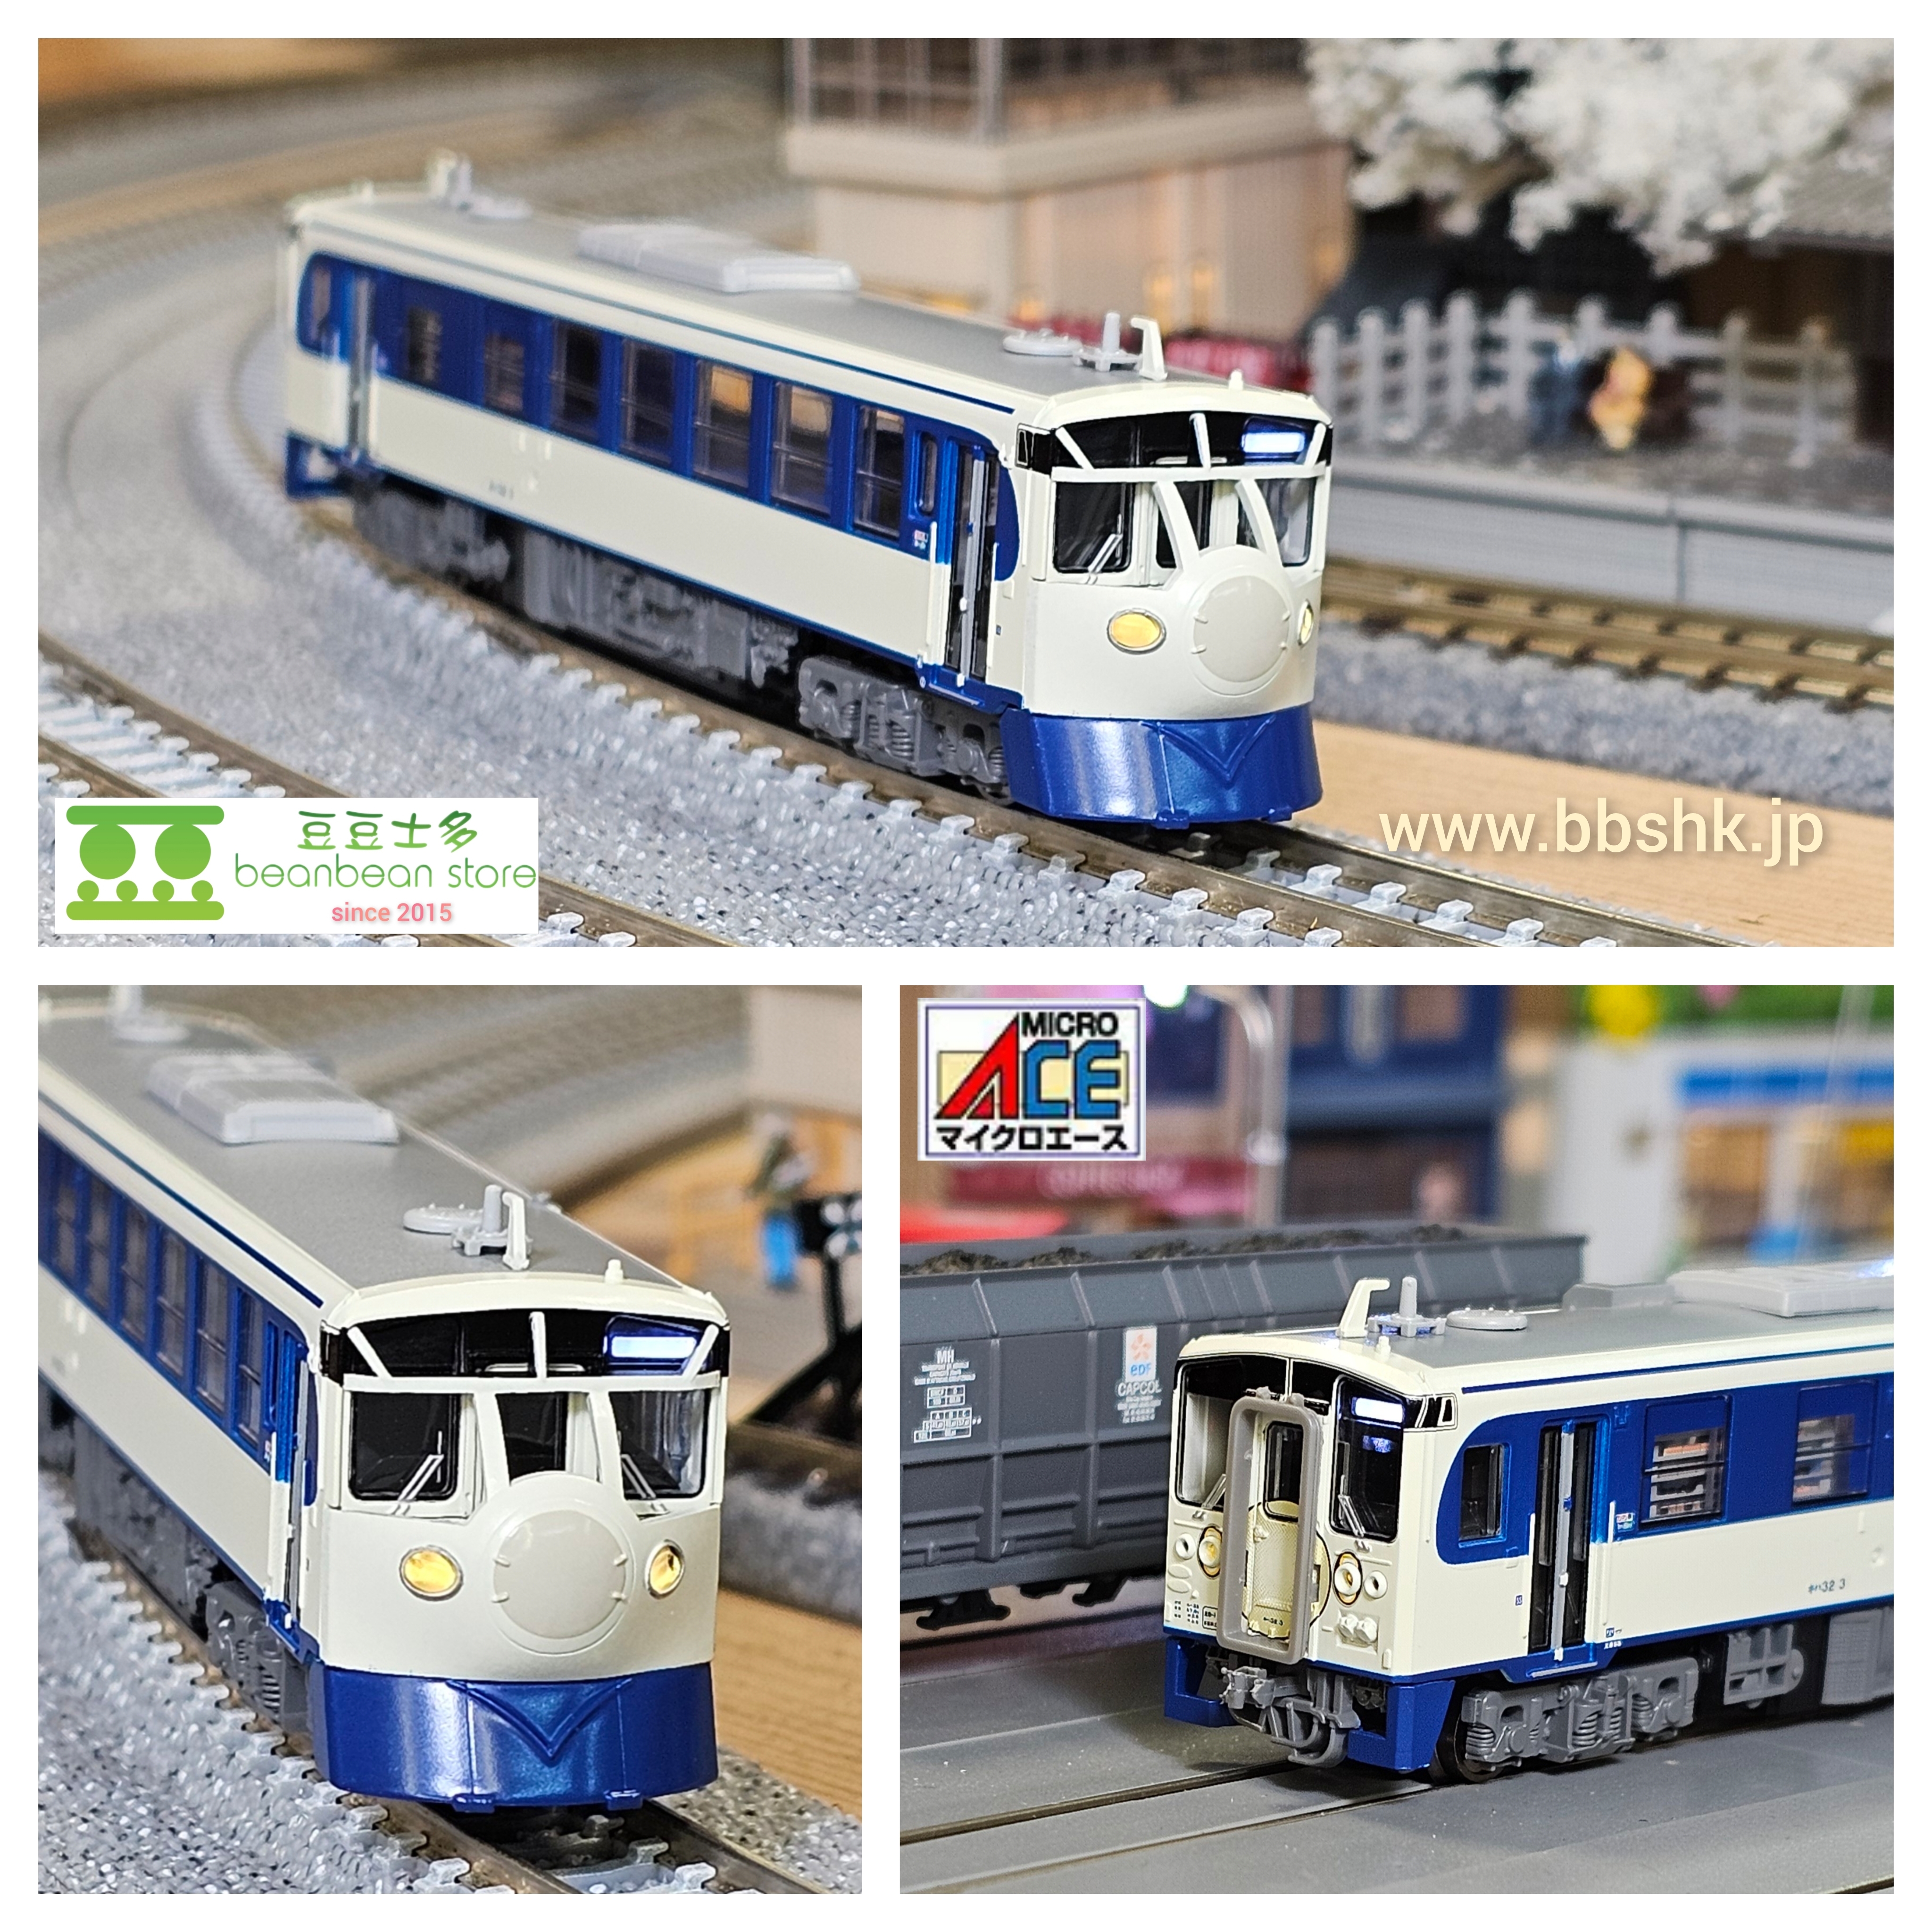 MICRO ACE A7887 キハ32形 Tetsudo Hobby Train